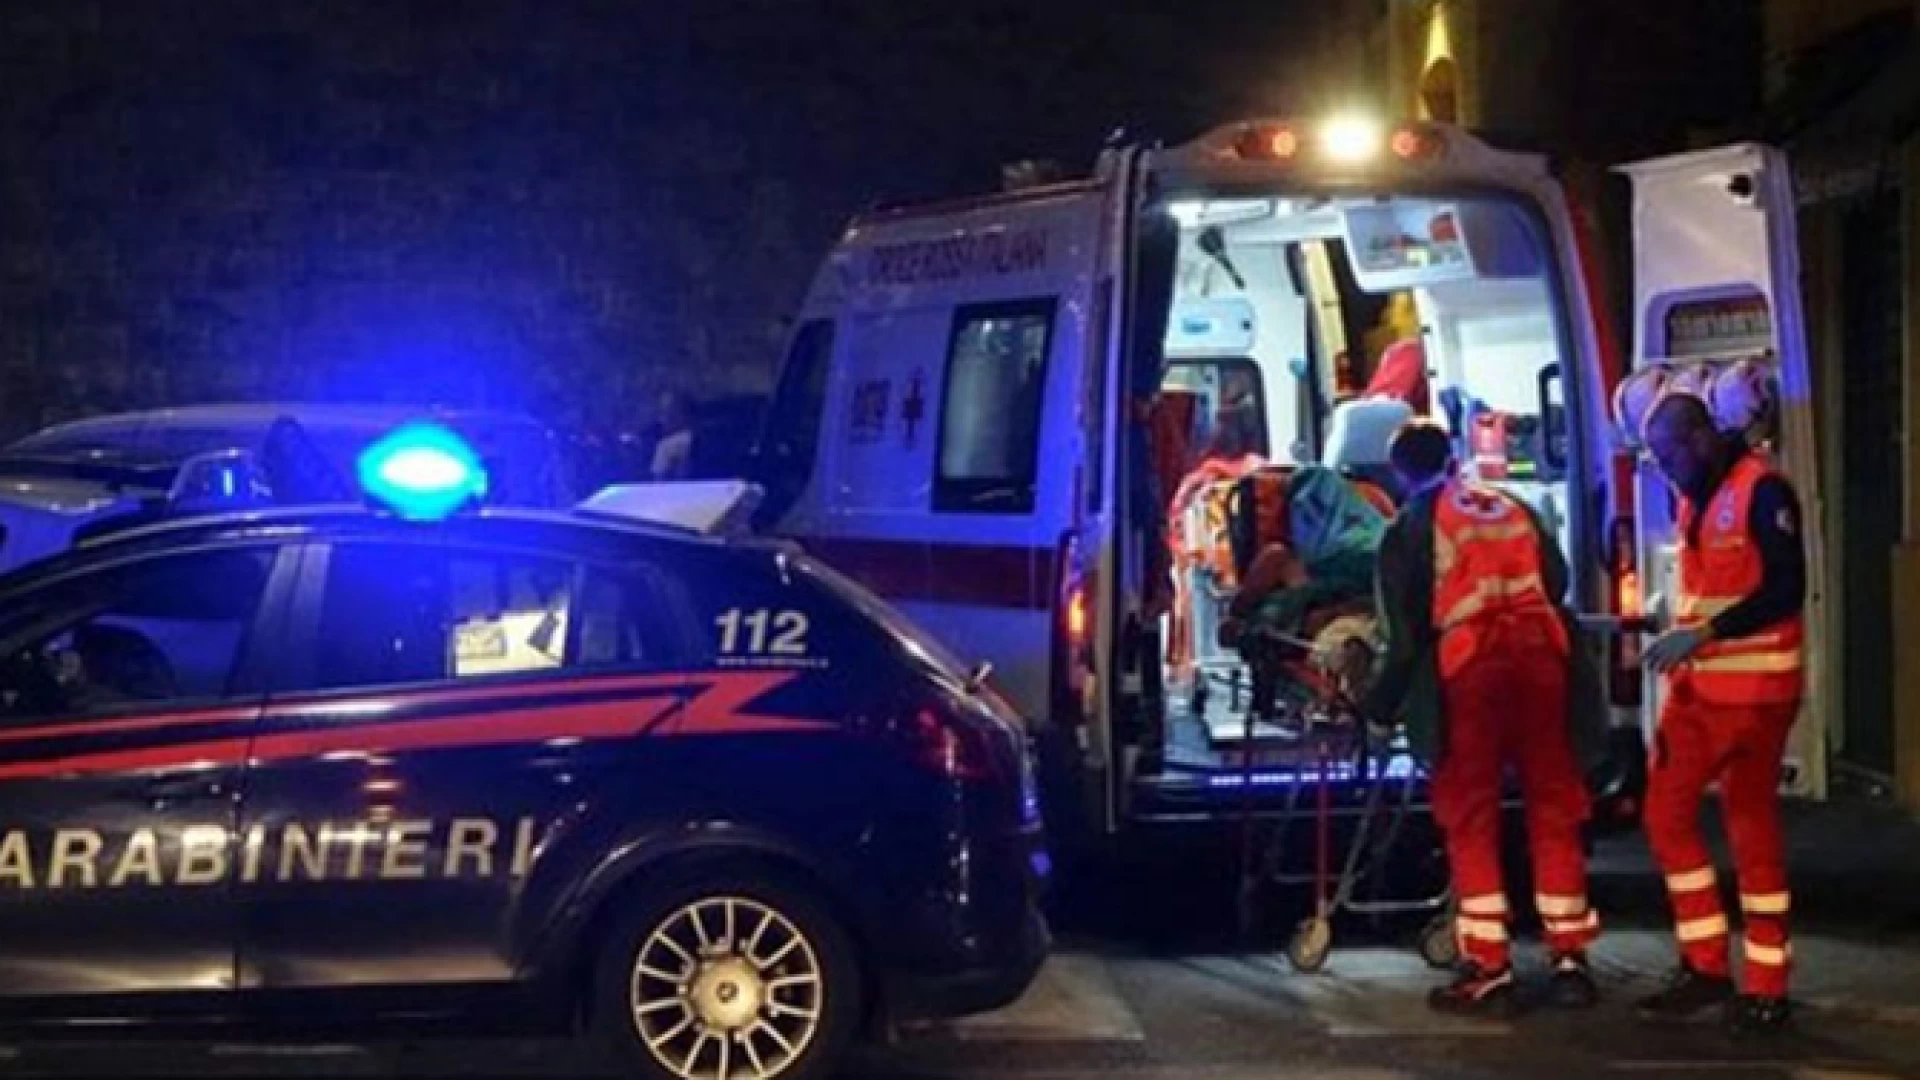 Venafro: intervento provvidenziale dei Carabinieri che salvano una 80enne colta da malore in casa.